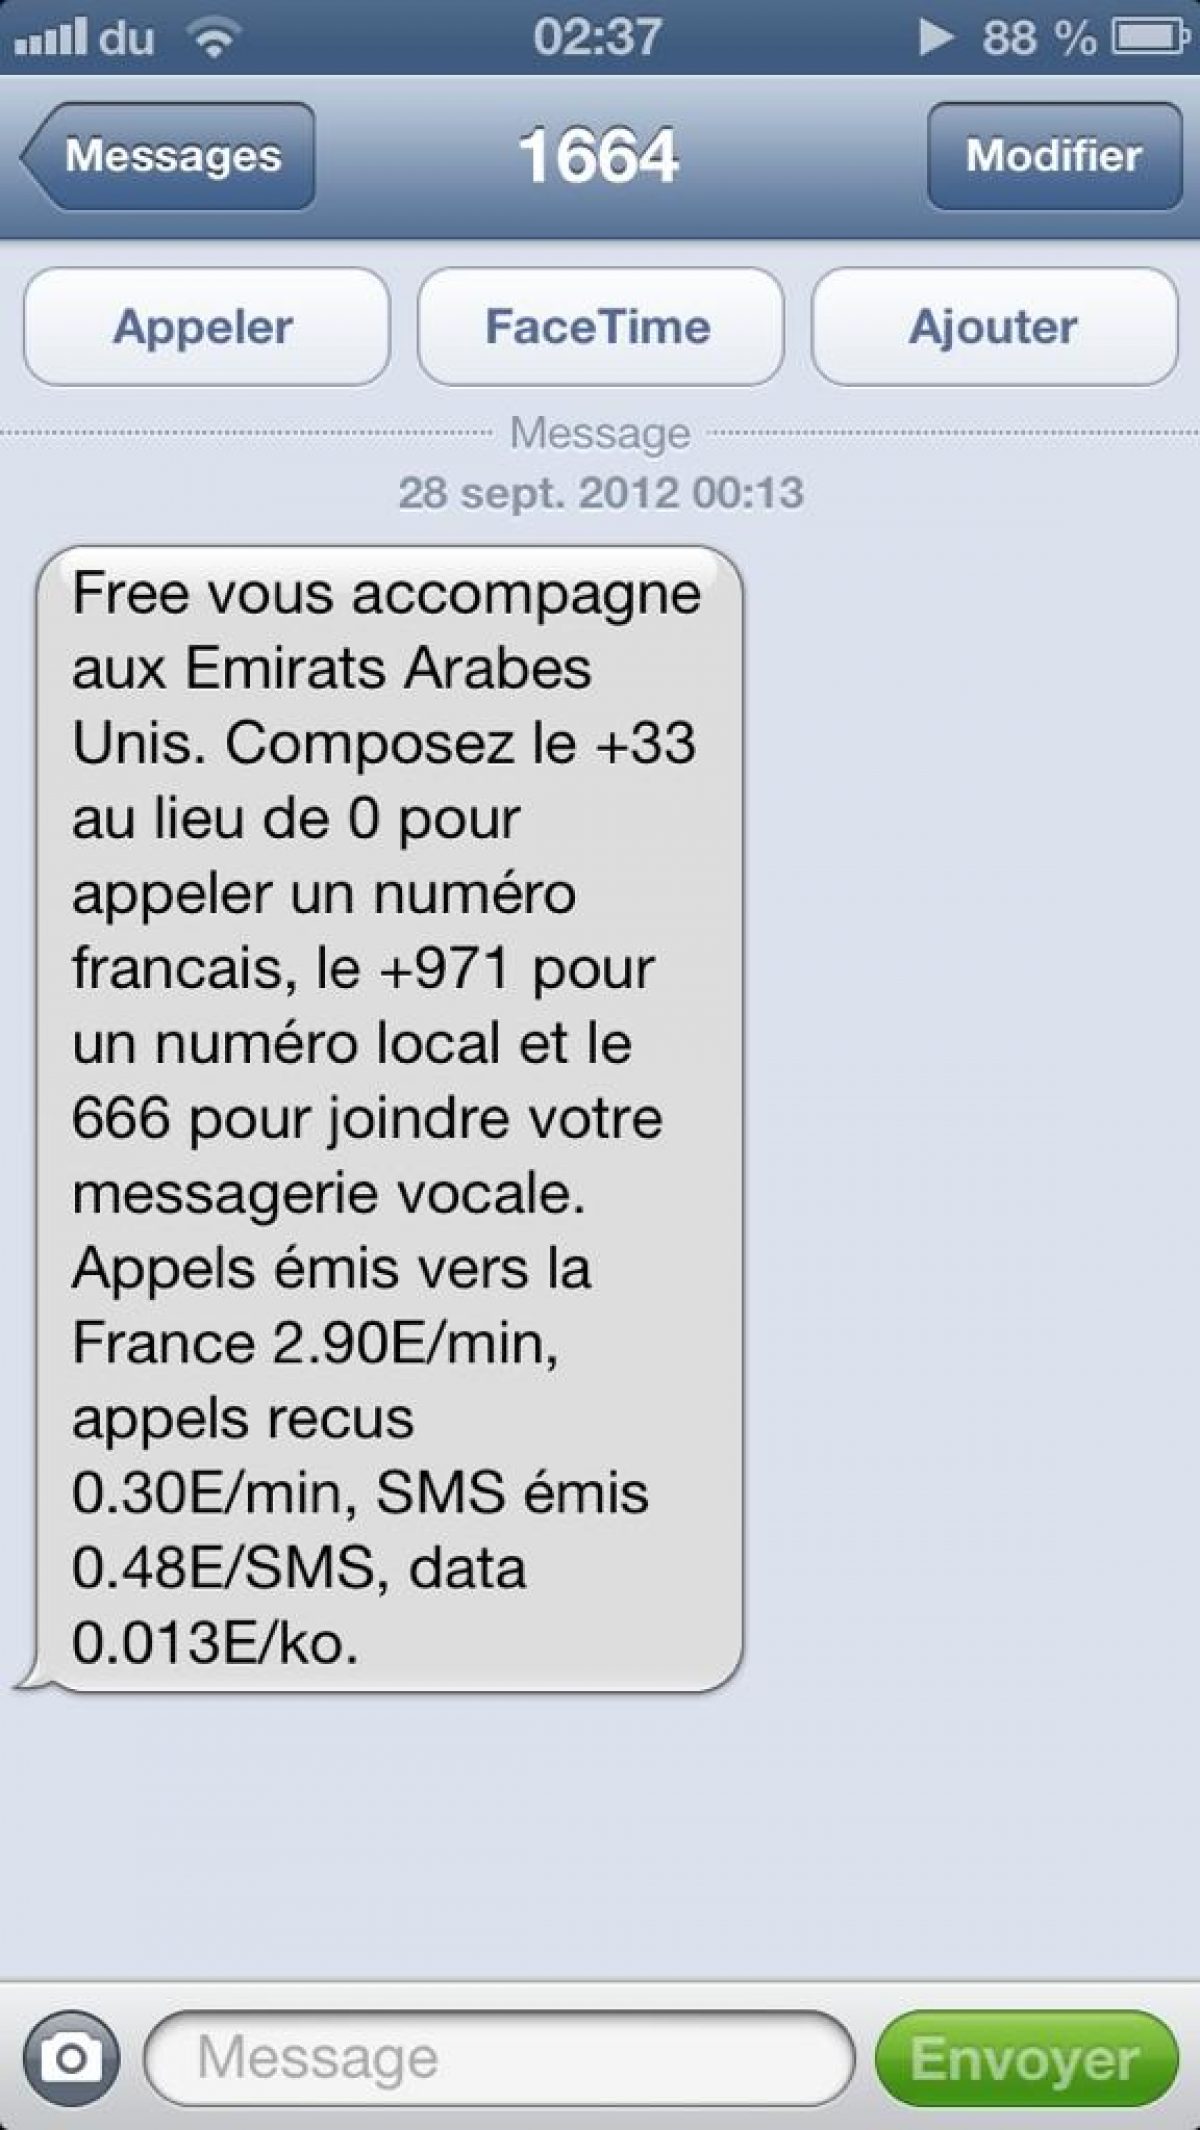 Free Mobile envoie désormais un SMS de bienvenue à l’étranger, avec les tarifs du pays